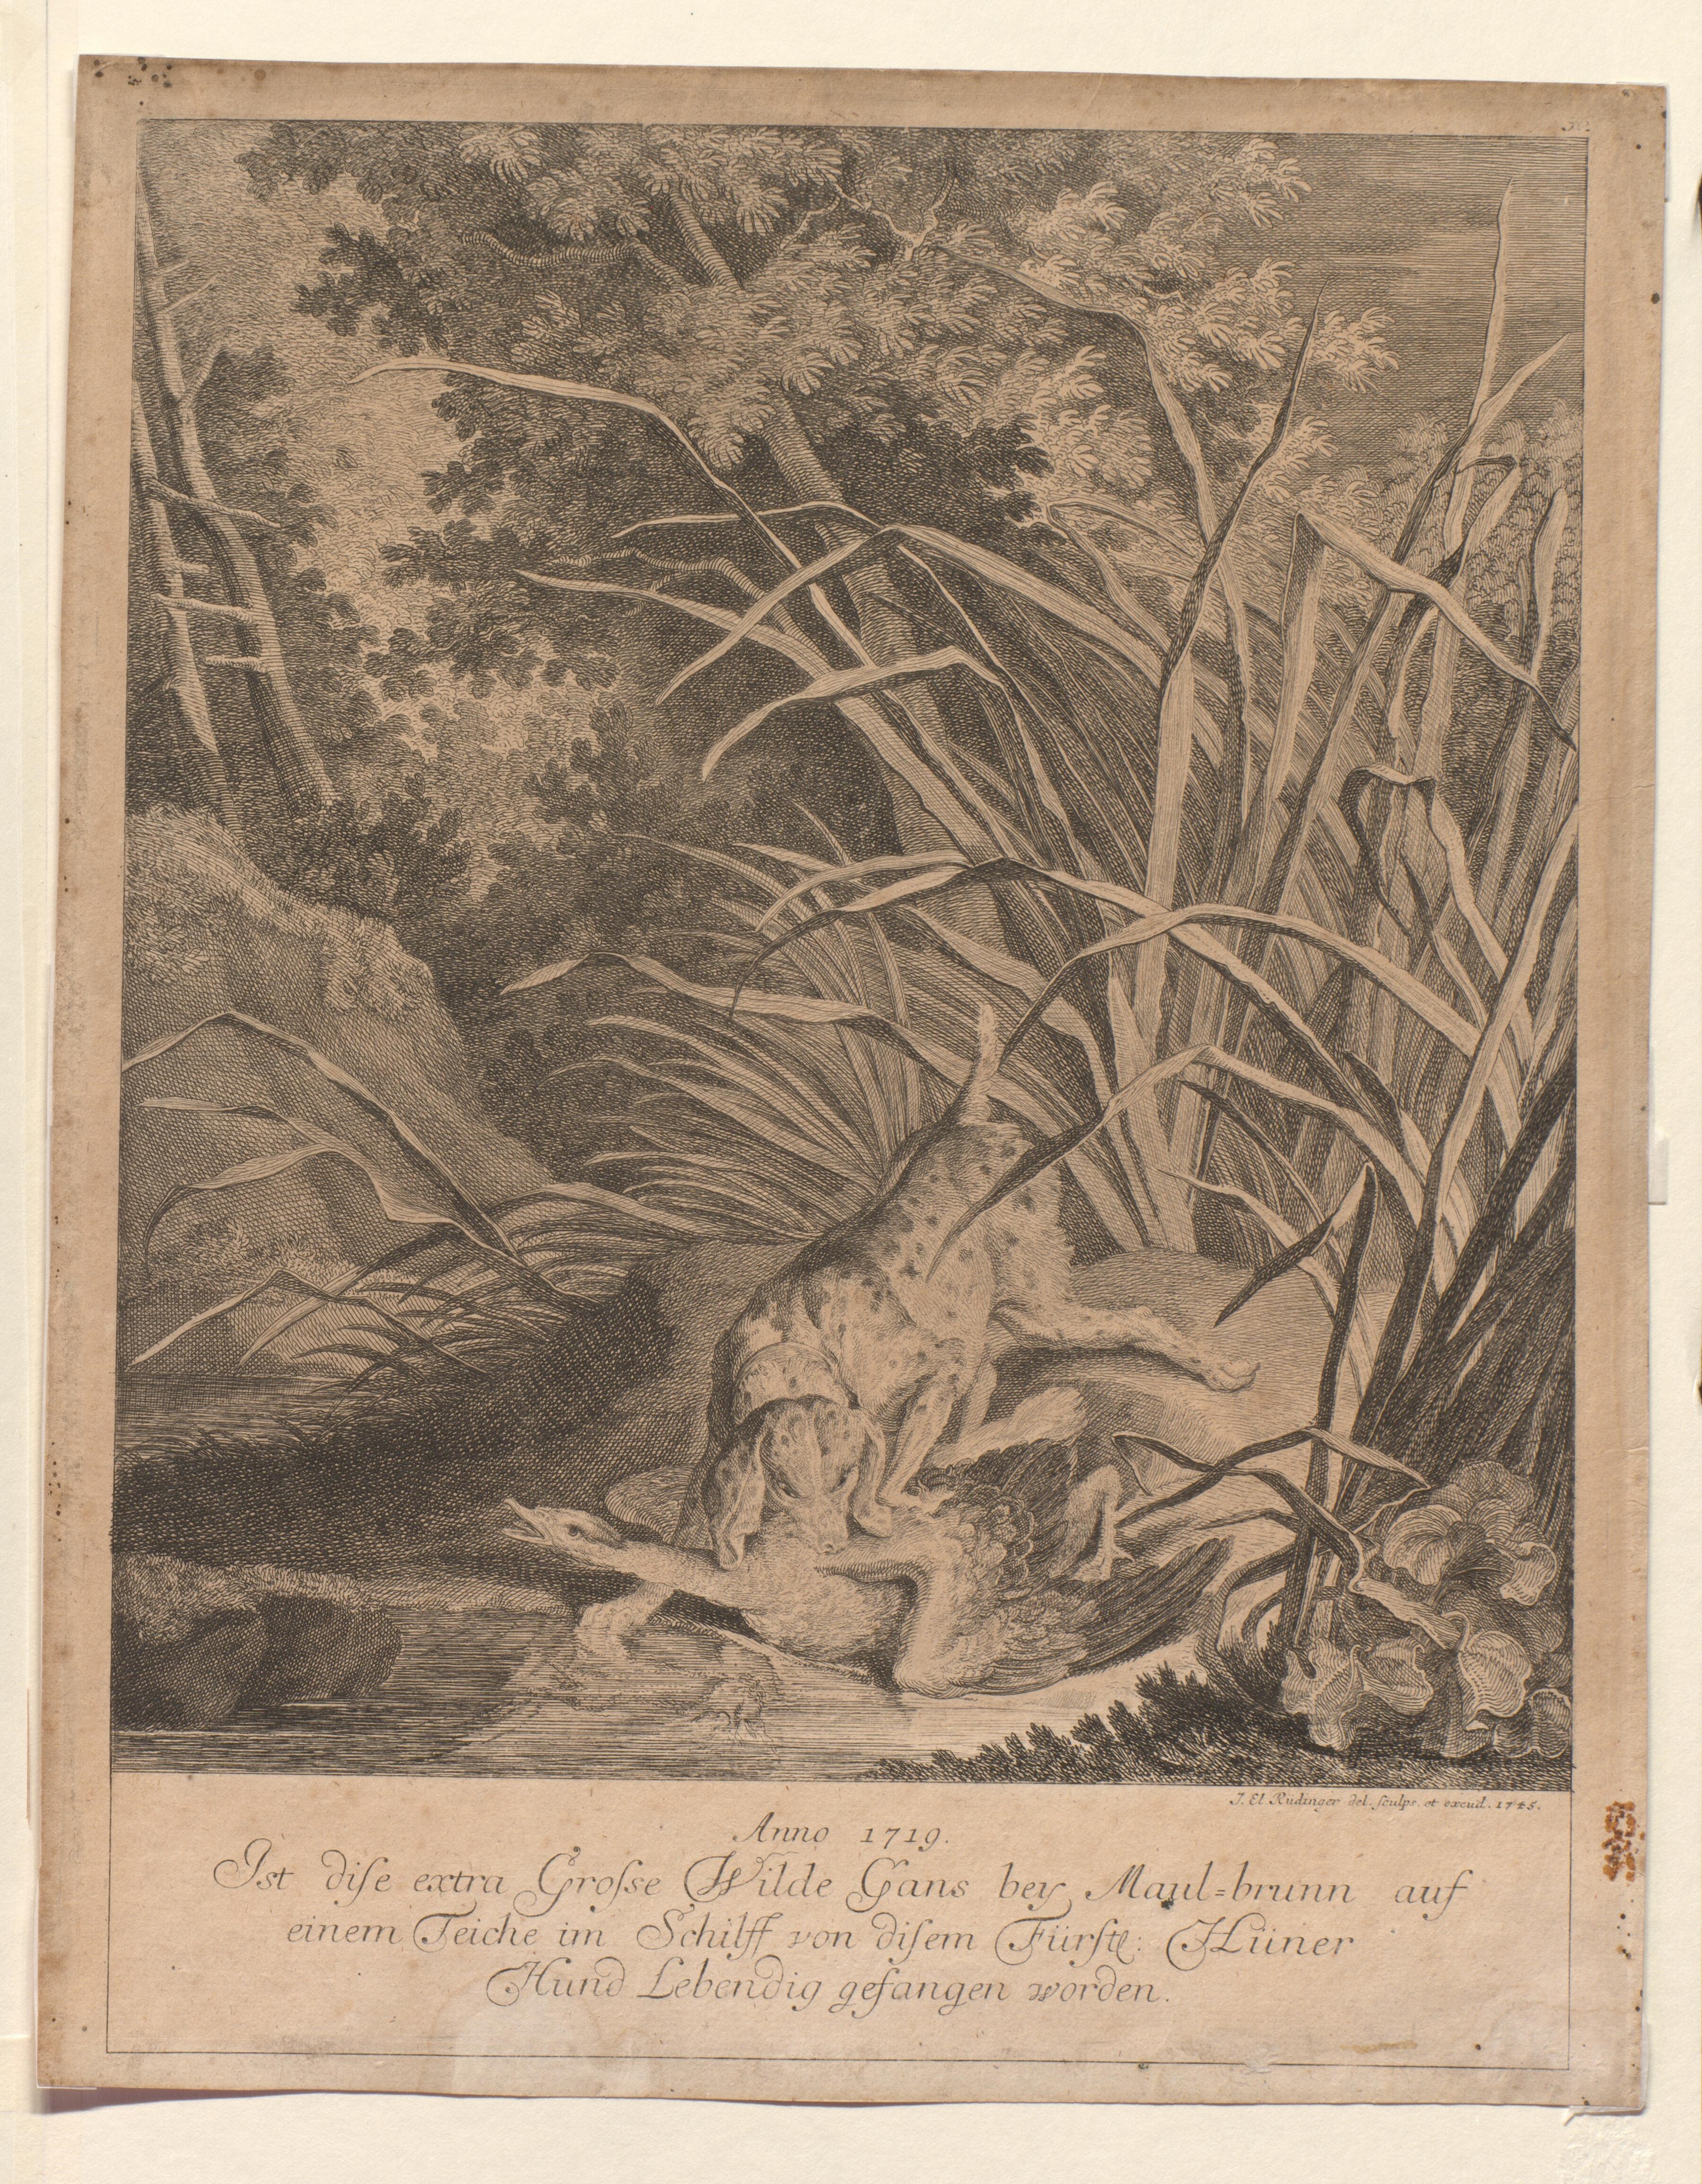 Vom Hühnerhund gefangene Wildgans, 1719 / 1745, VBb - 327 (Gleimhaus CC BY-NC-SA)